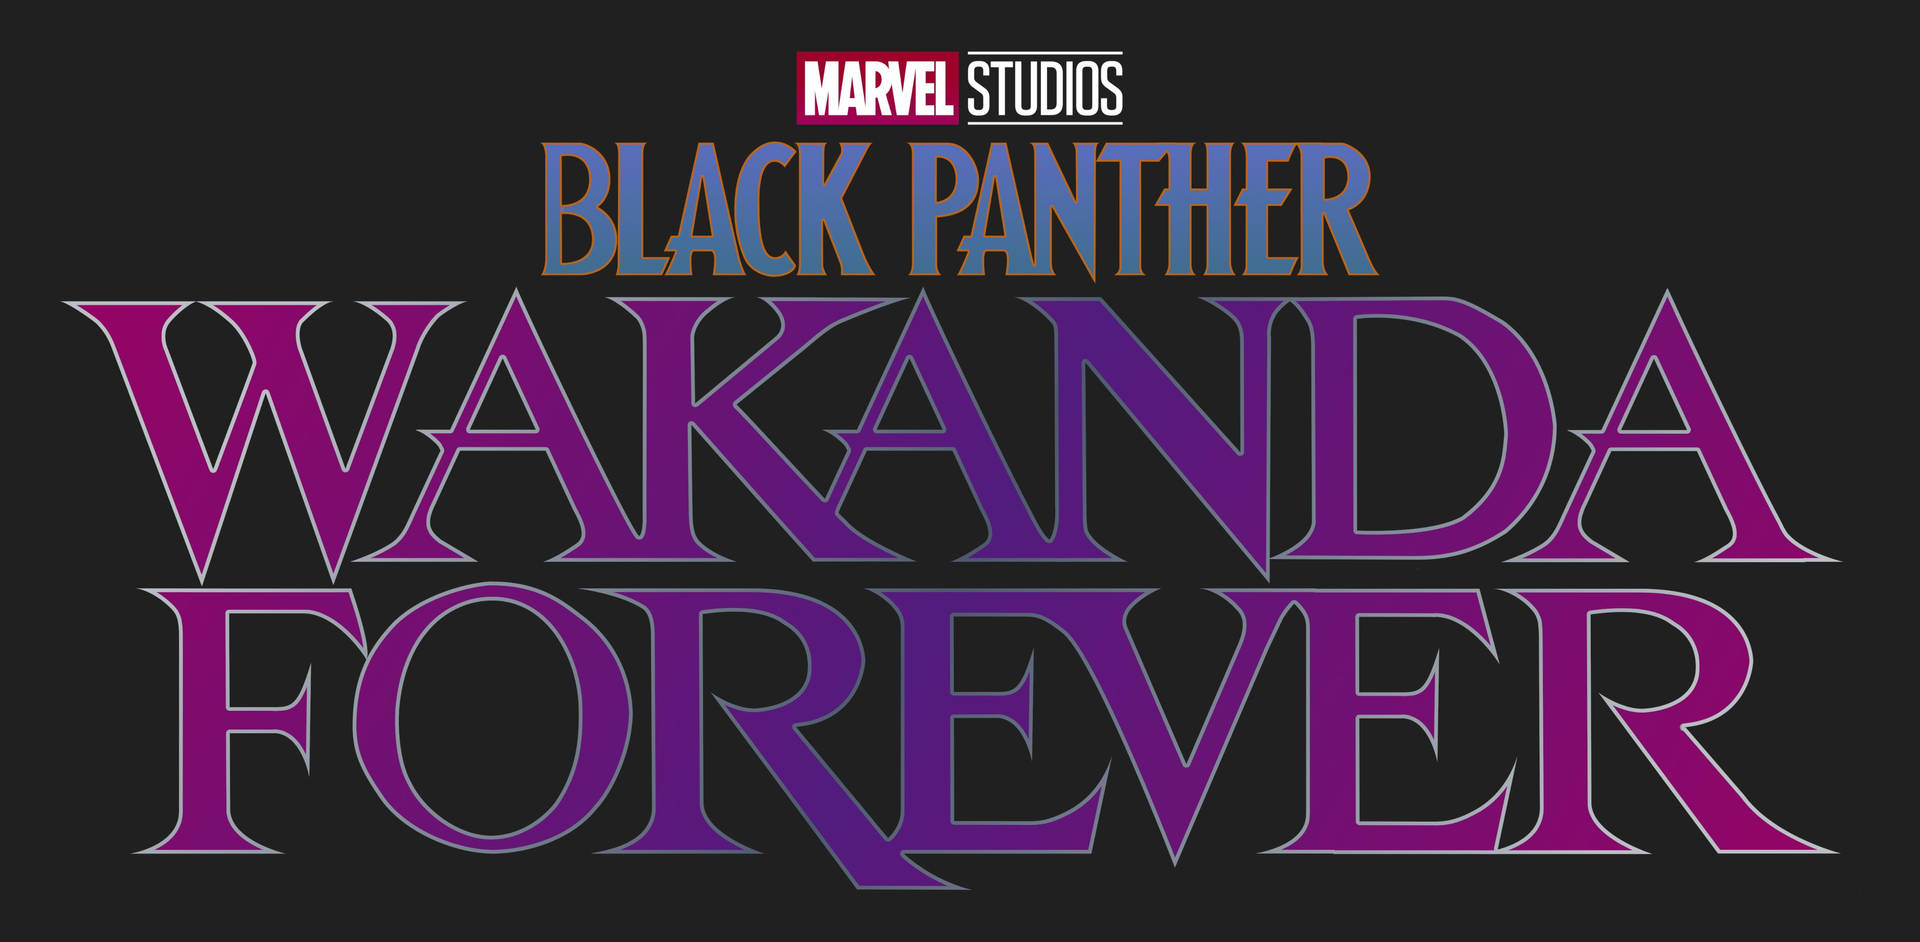 Lilaschwarzer Panther: Wakanda Forever Logo Wallpaper